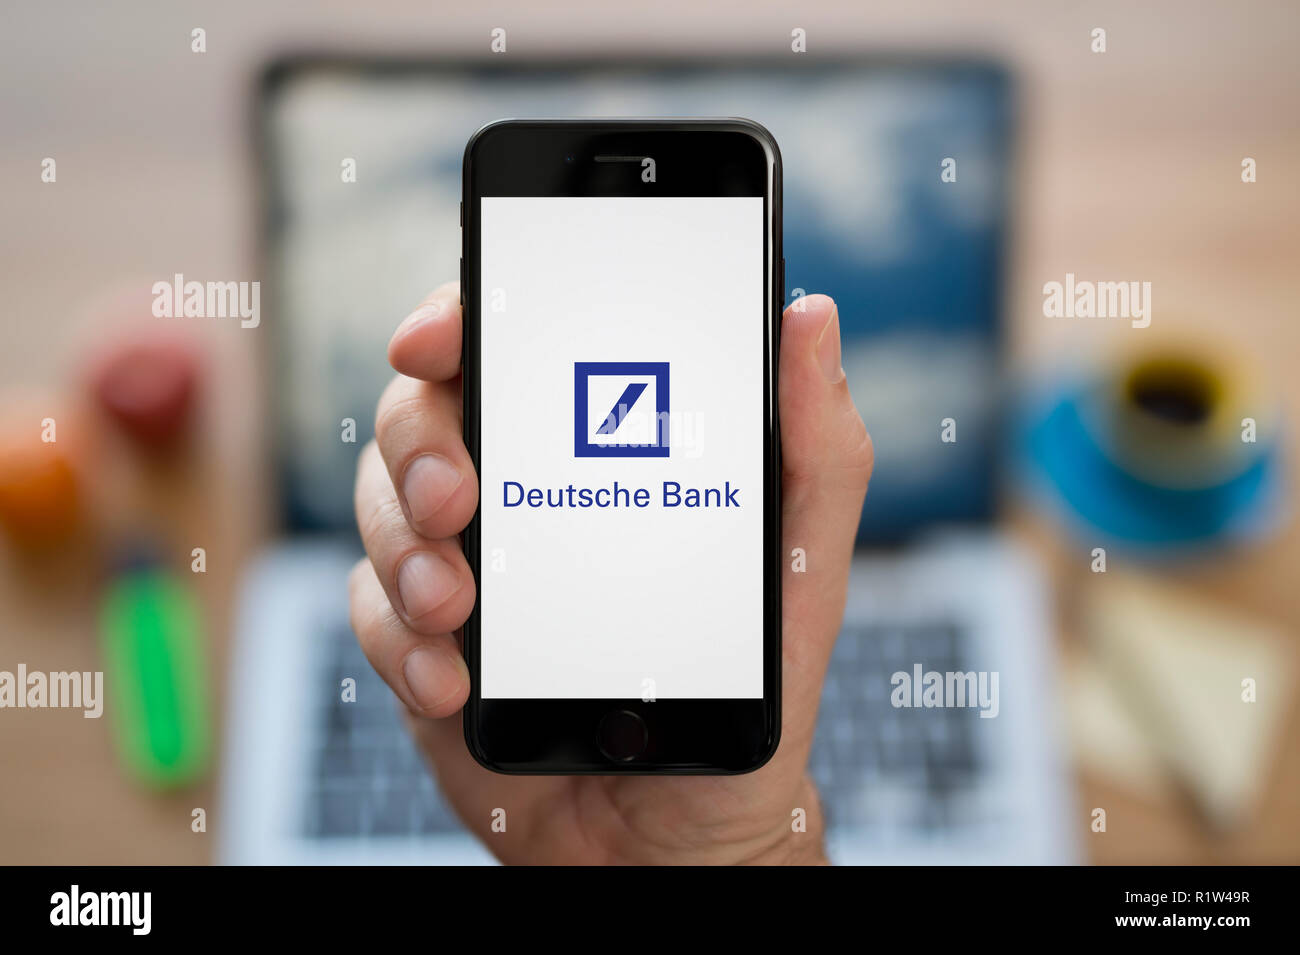 Un homme se penche sur son iPhone qui affiche le logo de la Deutsche Bank, en restant assis devant son ordinateur 24 (usage éditorial uniquement). Banque D'Images